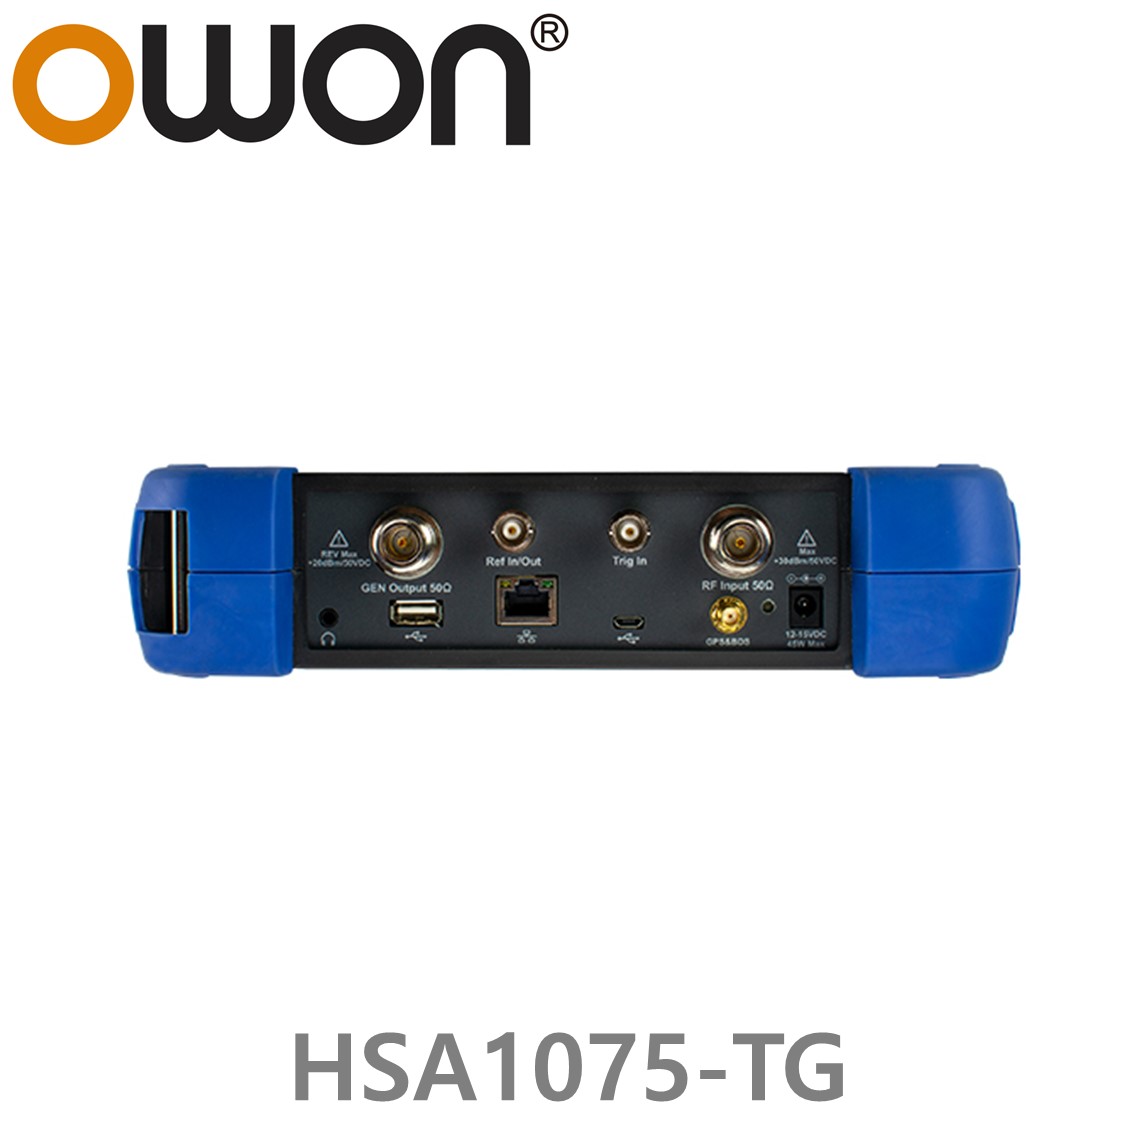 [ OWON ] HSA1075-TG 휴대용 스펙트럼 아날라이저 9 kHz to 7.5GHz 스펙트럼 분석기, 트래킹 제너레이터